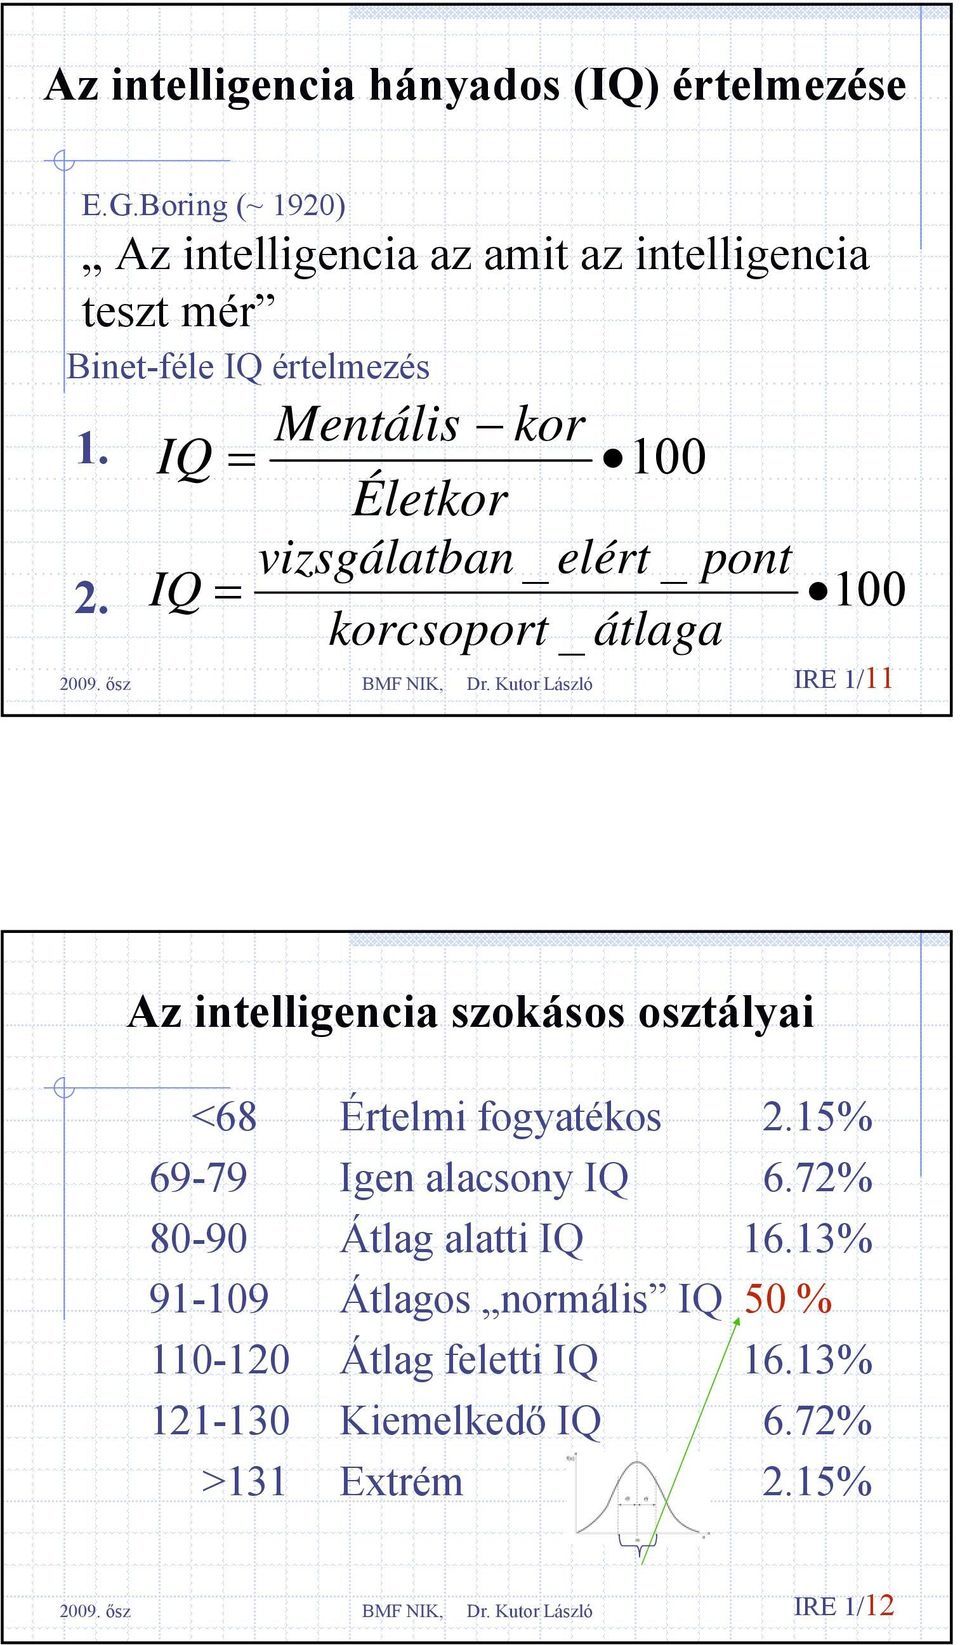 Mentális kor IQ = 100 Életkor vizsgálatban _ elért _ pont IQ = korcsoport _ átlaga 100 IRE 1/11 Az intelligencia